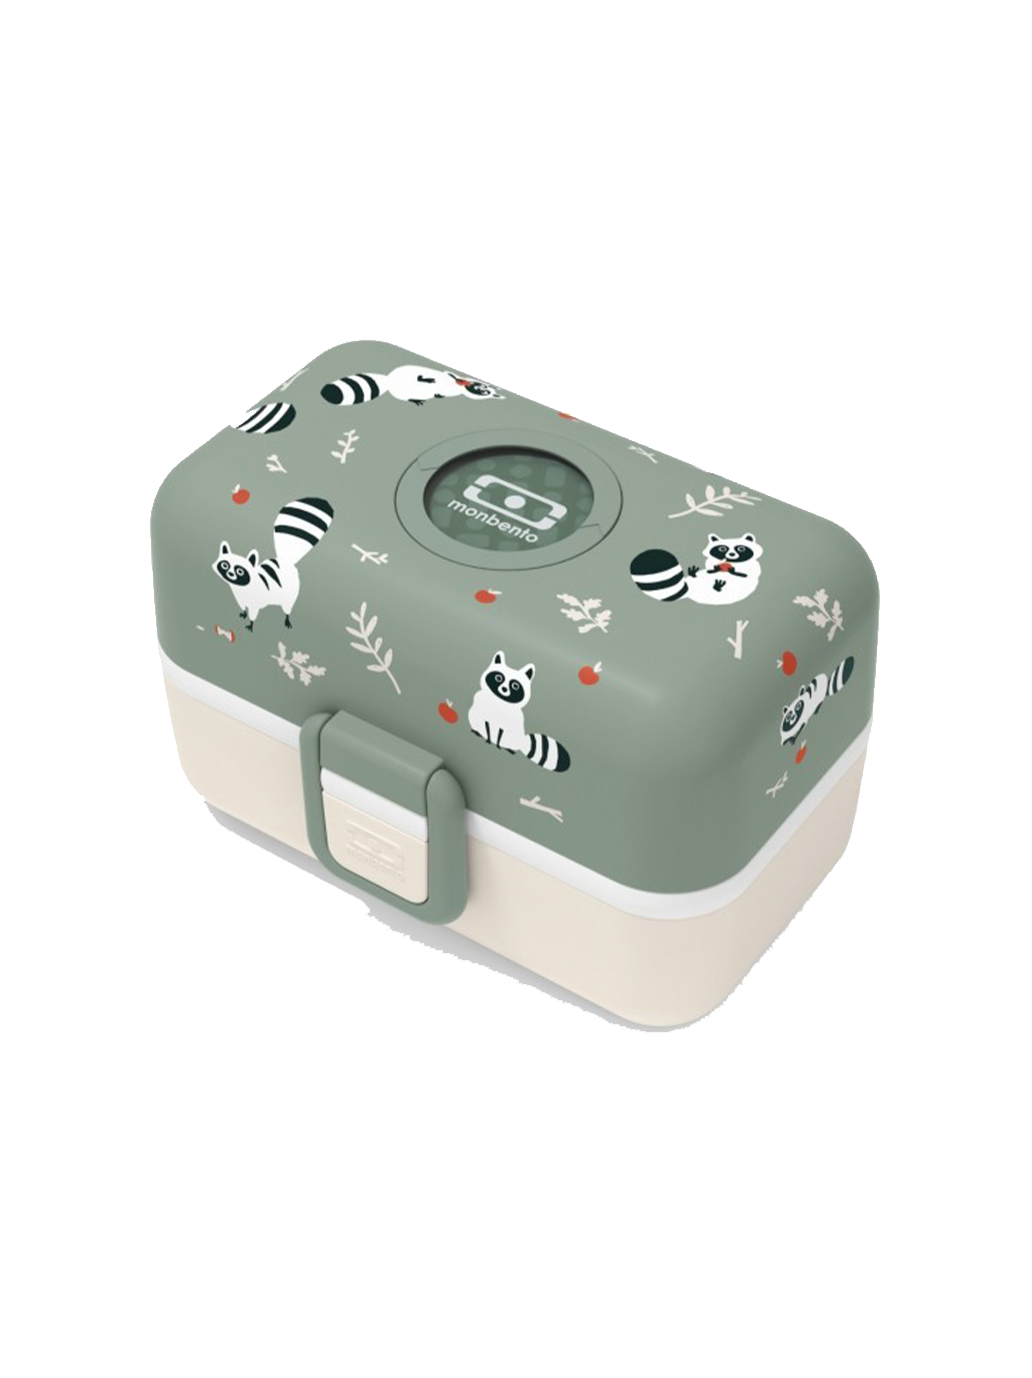 Kinder-Brotdose Tresor Bento-Box